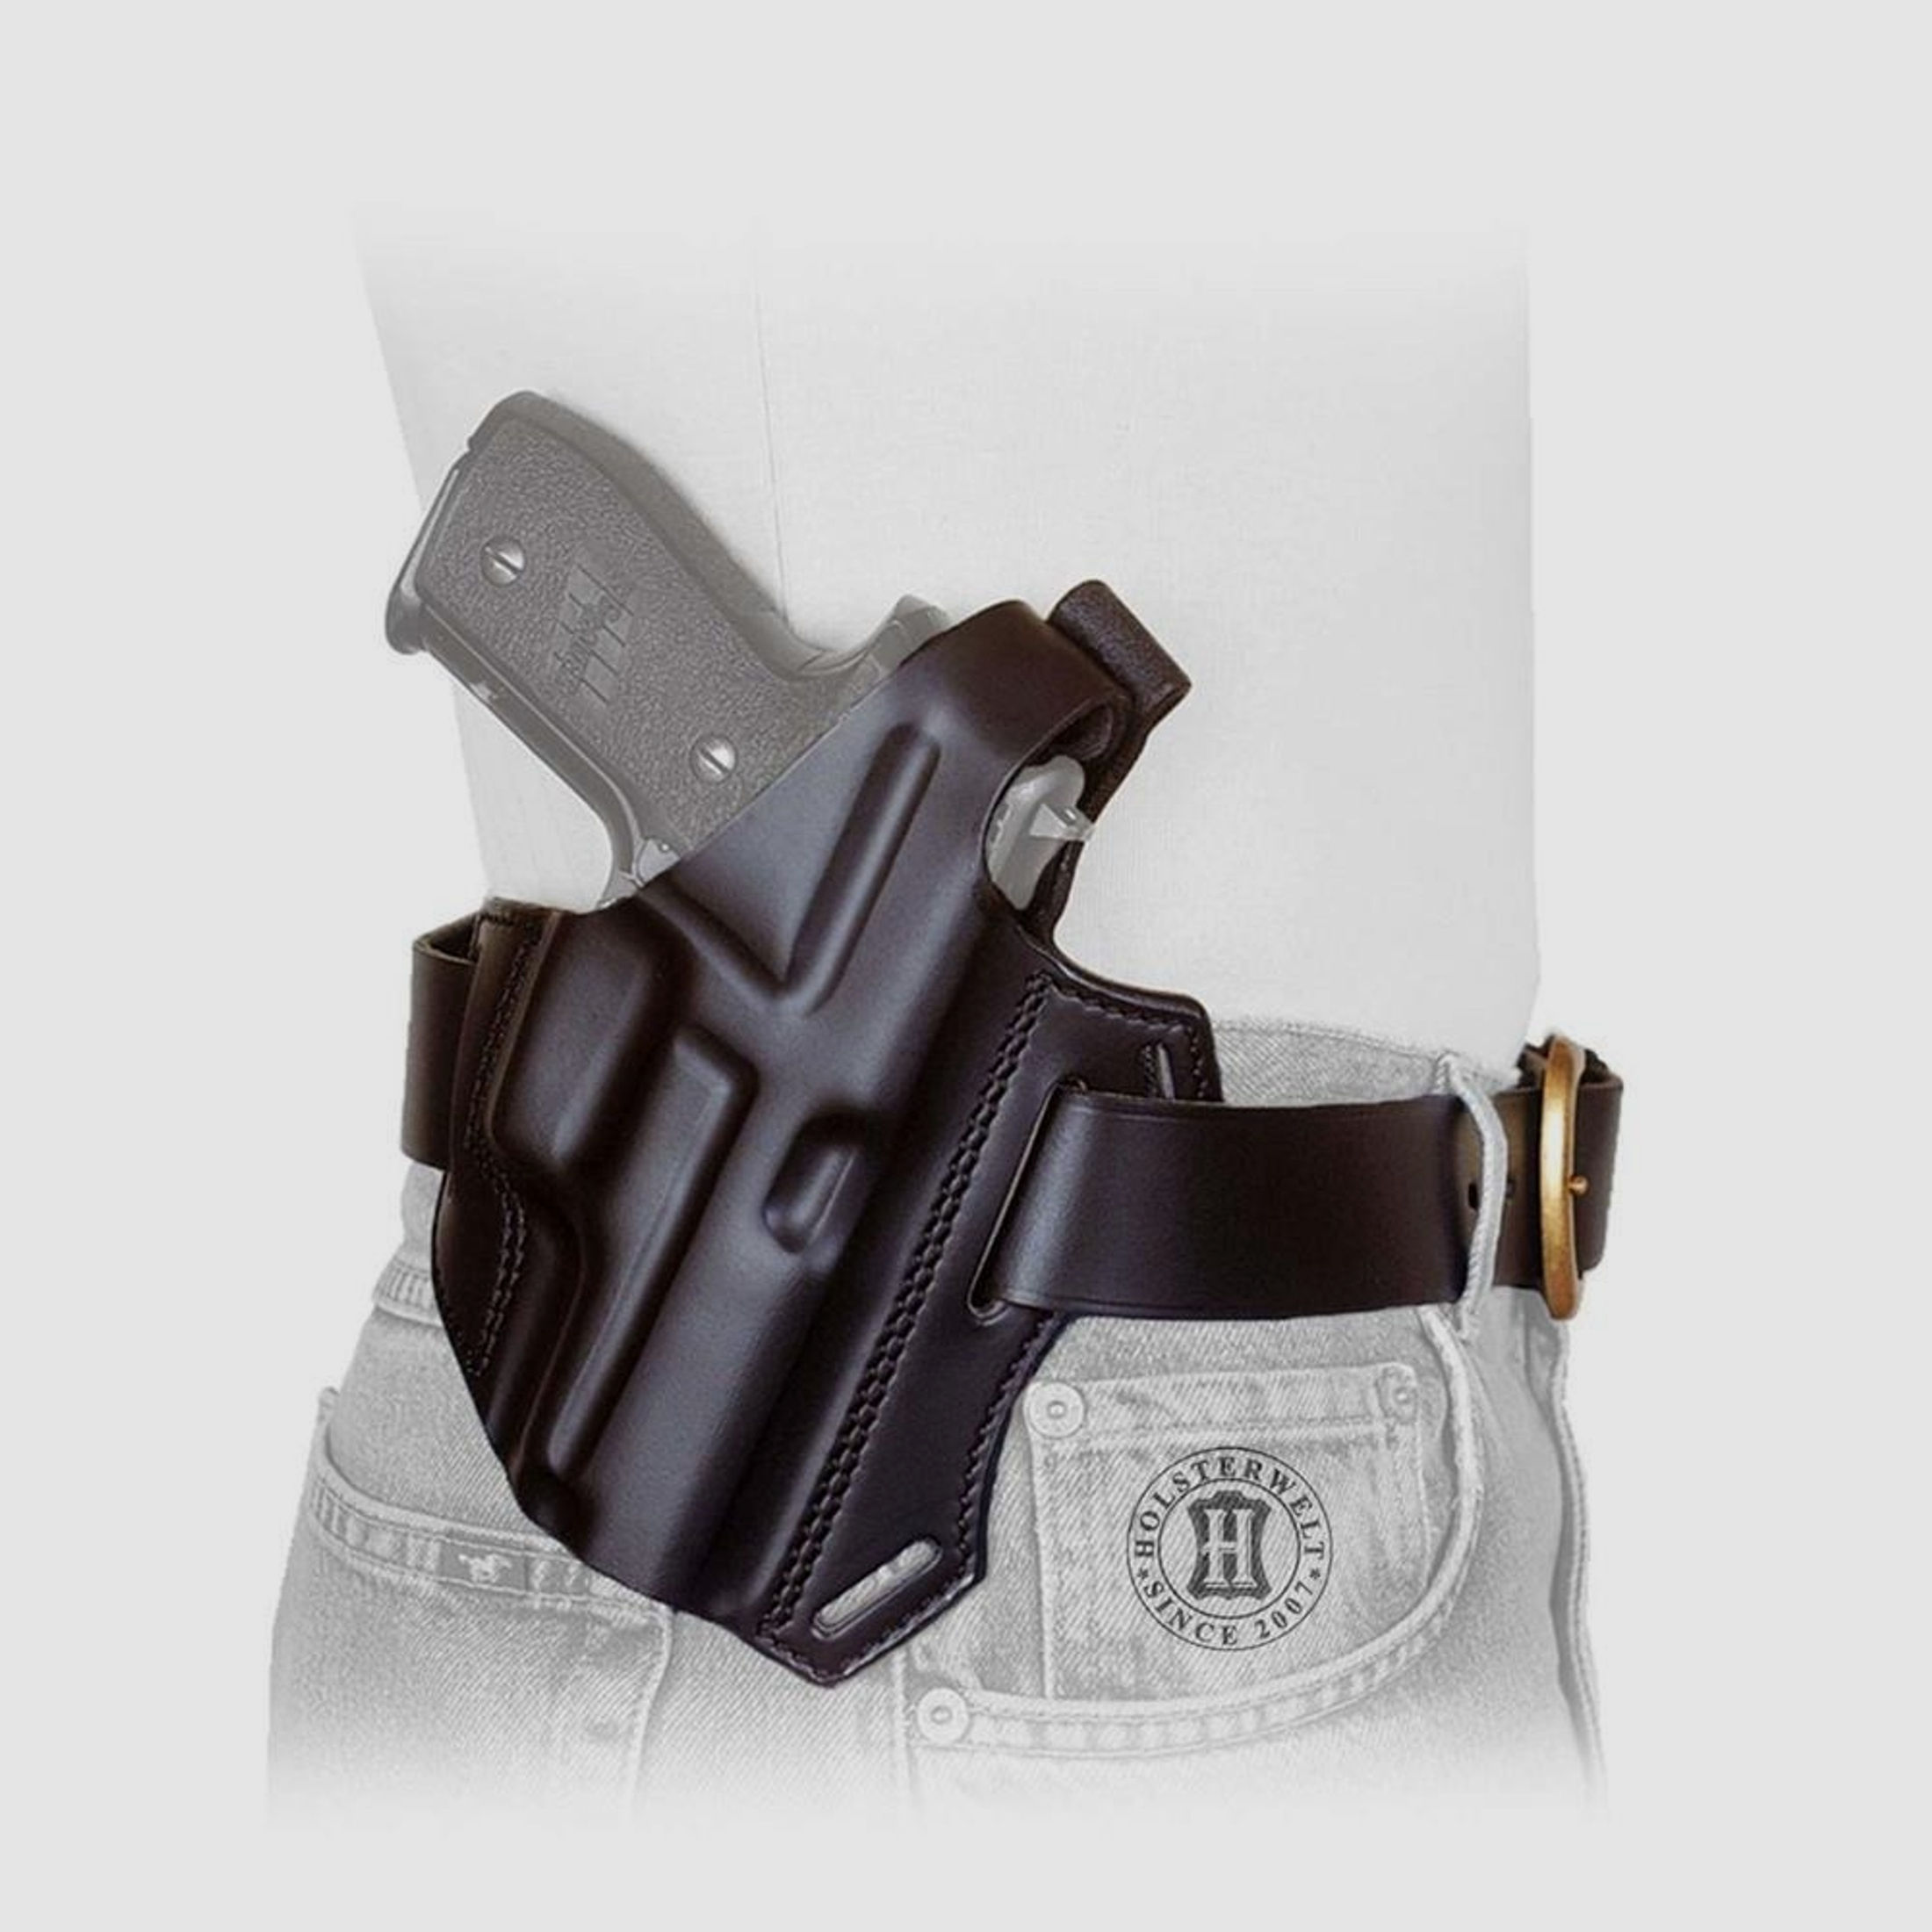 Gürtelholster / Schulterholster MULTI VARIO Glock 20/21/29/30, Zoraki 917-Braun-Rechtshänder